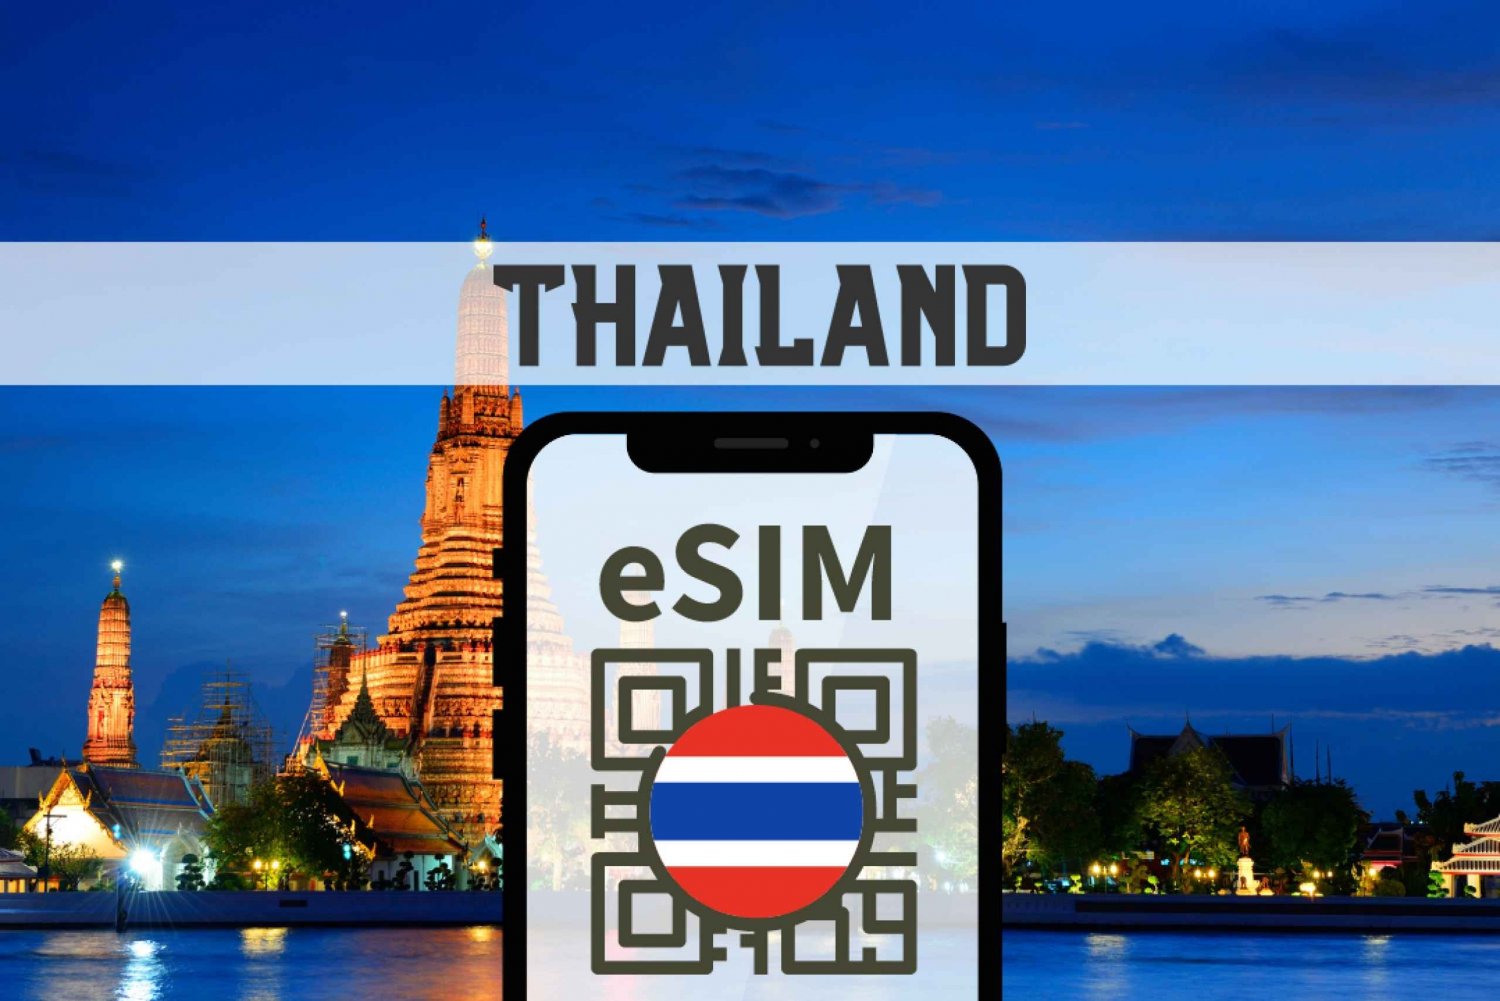 Thailand eSIM with Unlimited 5G/4G Data & Voice